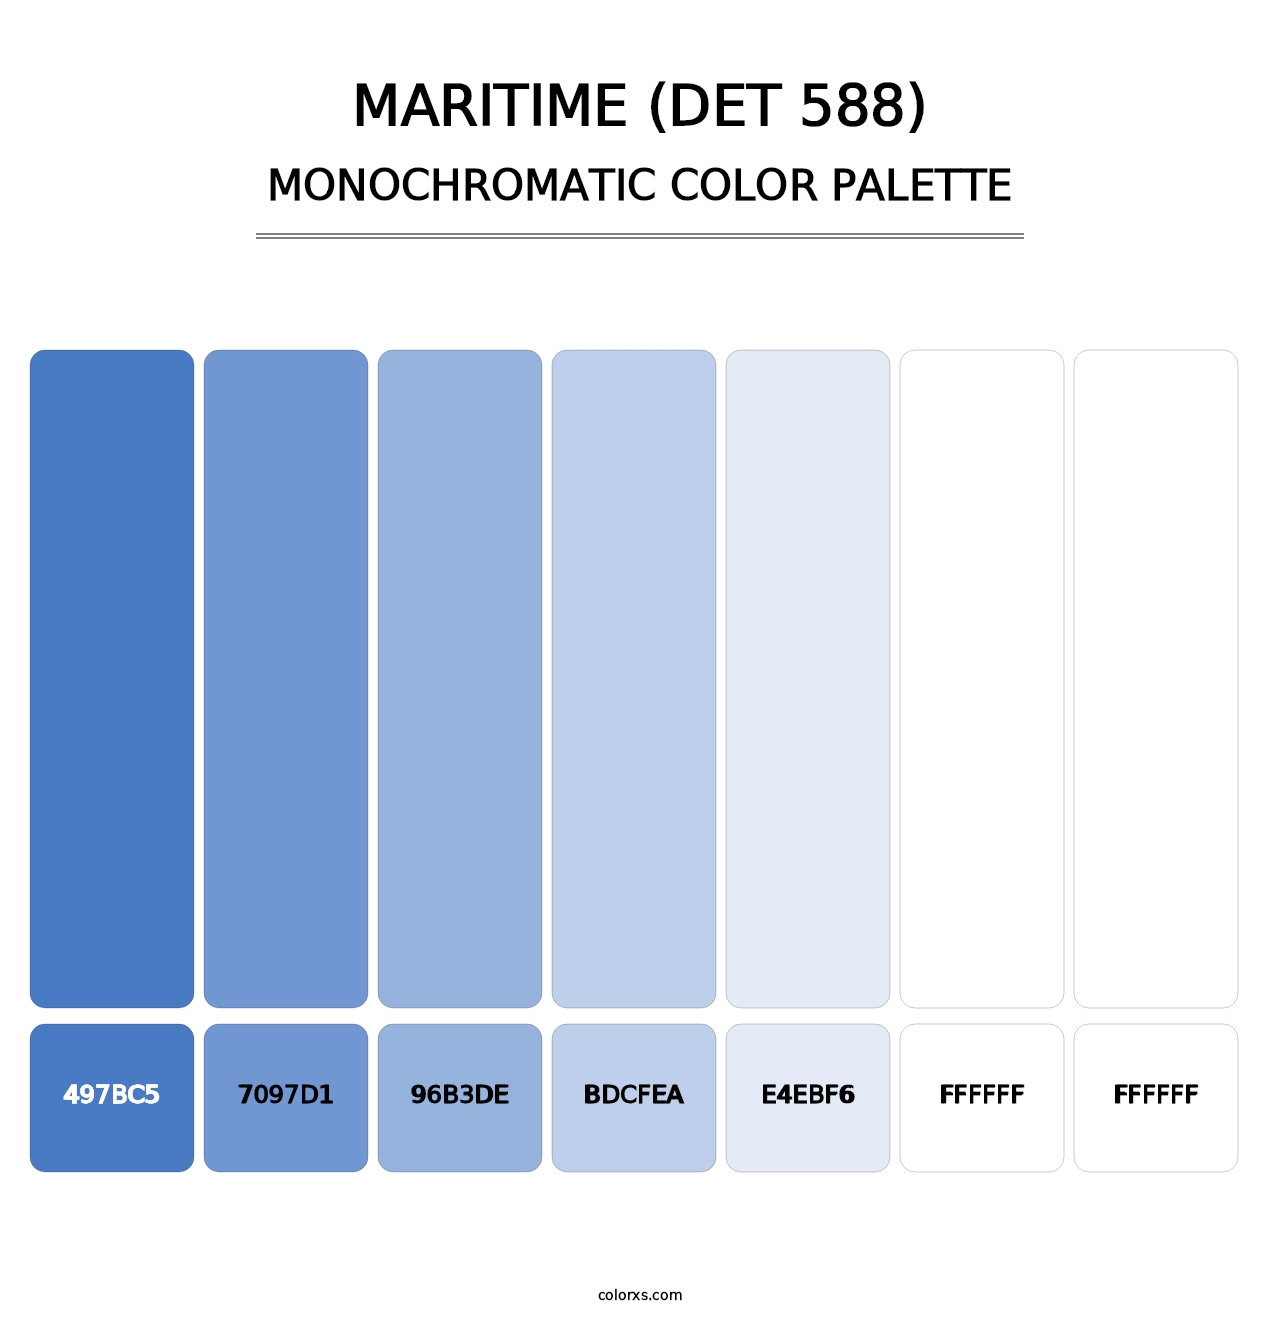 Maritime (DET 588) - Monochromatic Color Palette